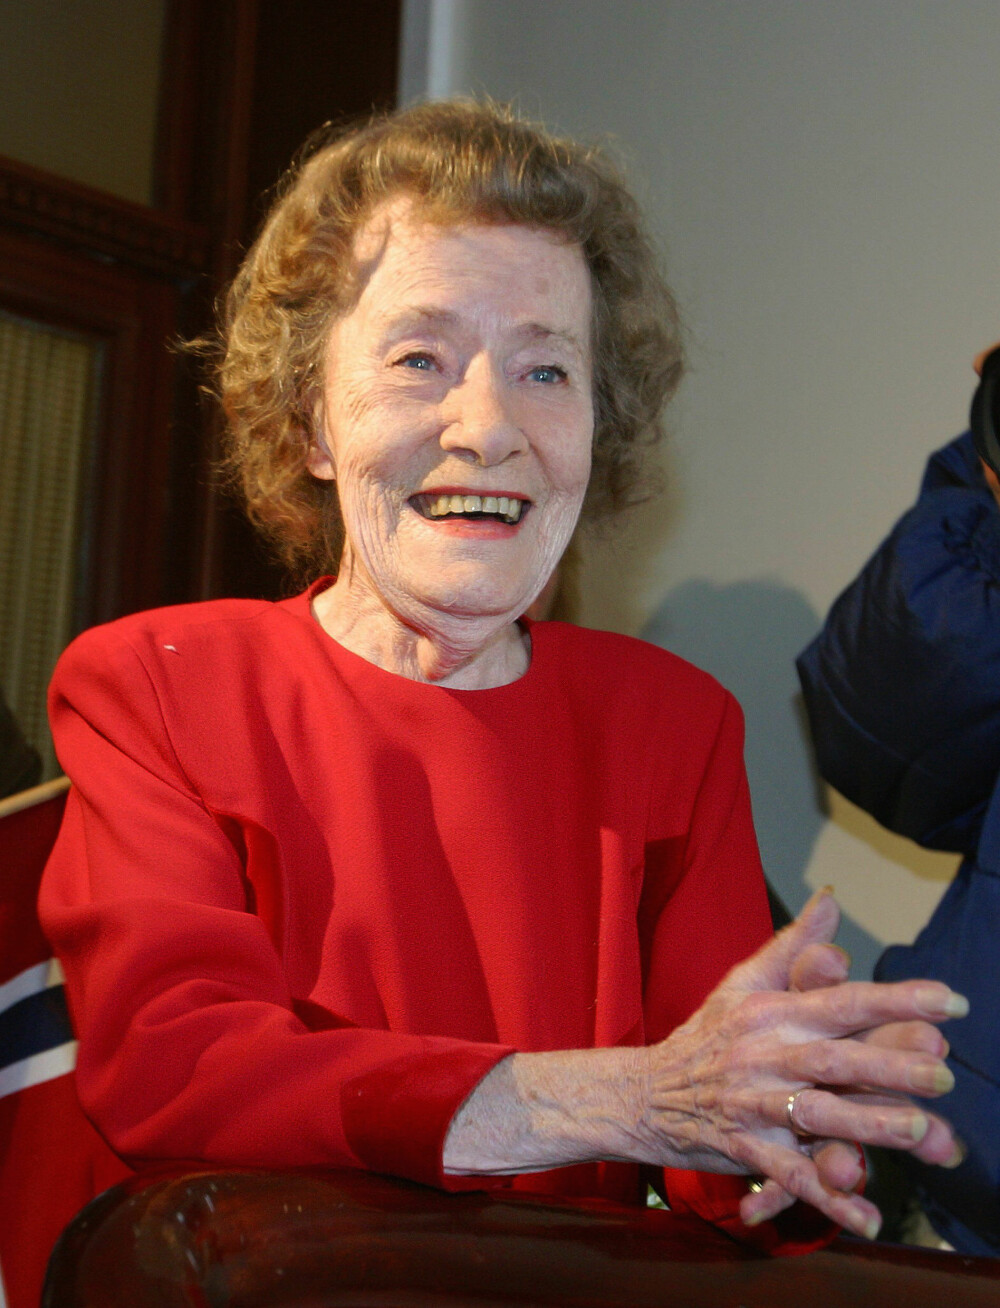 <b>SLIK VI HUSKER HENNE:</b> Da Aud fylte 80 år i 2002, møtte kollegaer og venner opp med sang og gaver på trappen hjemme hos henne. En rørt Aud tok imot hyllesten.